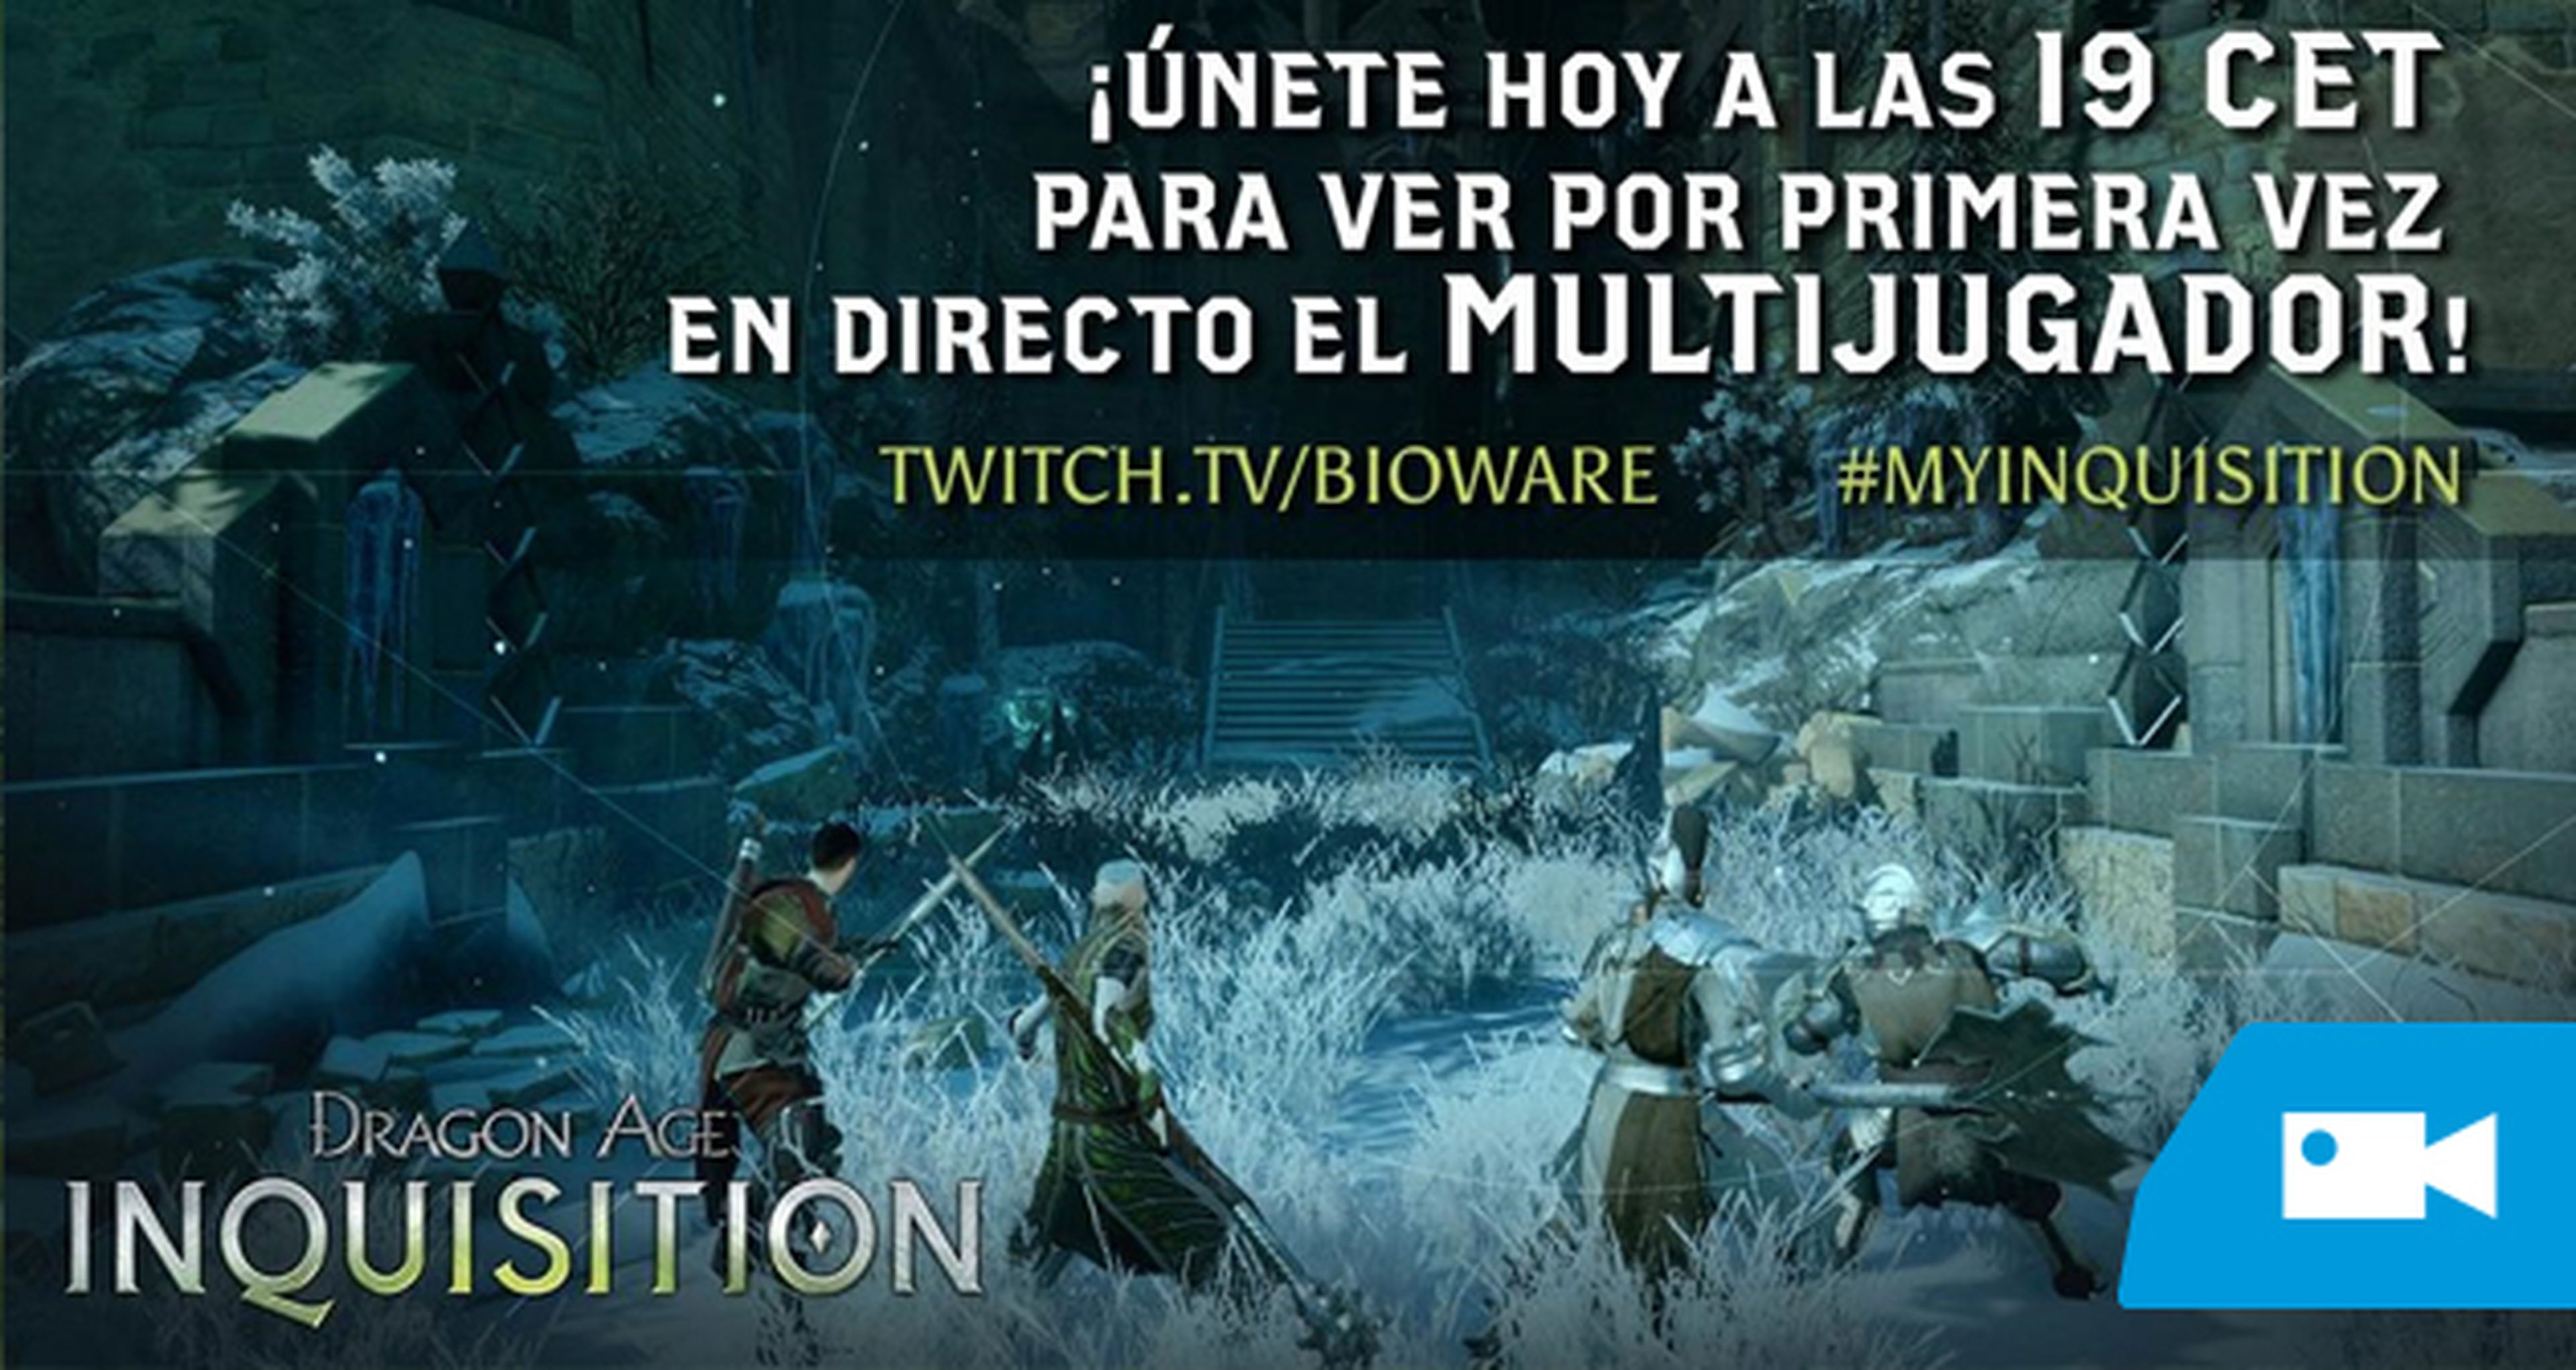 El multijugador de Dragon Age Inquisition en directo a las 19h